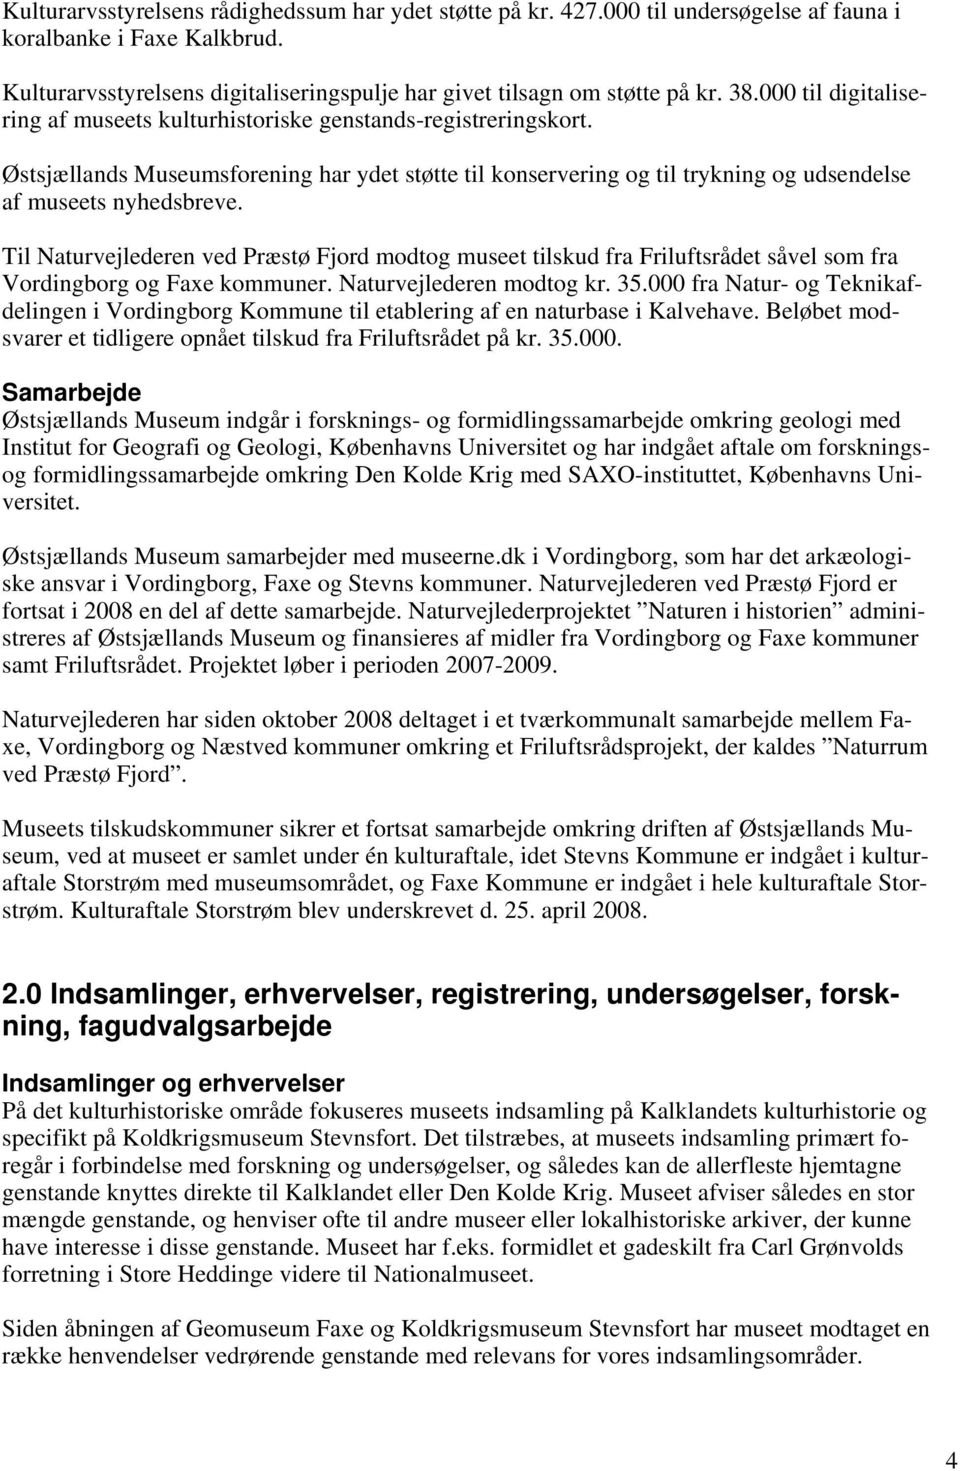 Til Naturvejlederen ved Præstø Fjord modtog museet tilskud fra Friluftsrådet såvel som fra Vordingborg og Faxe kommuner. Naturvejlederen modtog kr. 35.